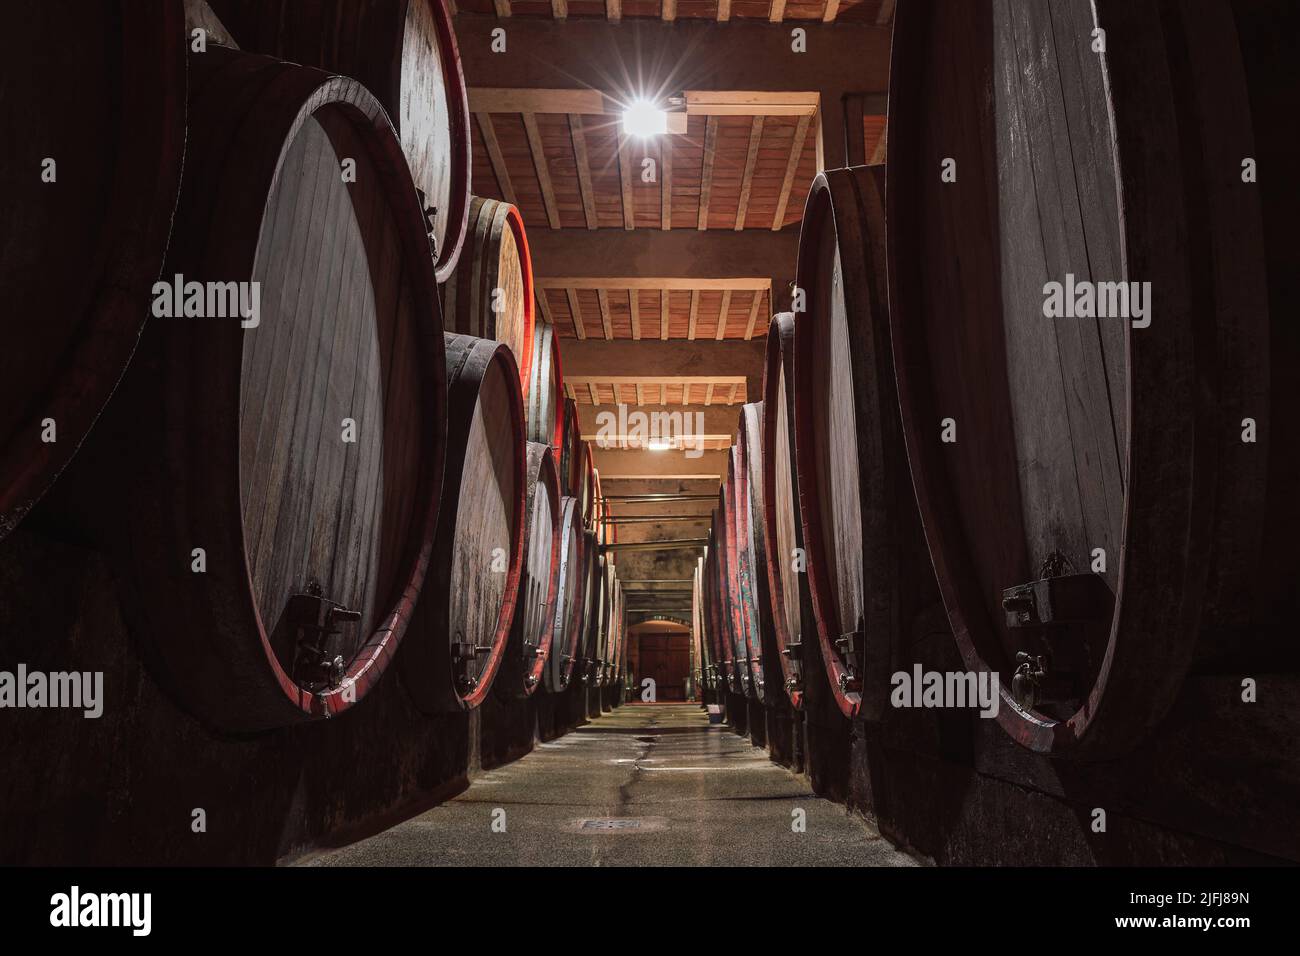 Reihen von hölzernen, mit Wein gefüllten Fässern säumen den Keller des Weinguts, ein Weinkeller mit langer Tradition und Geschichte Stockfoto